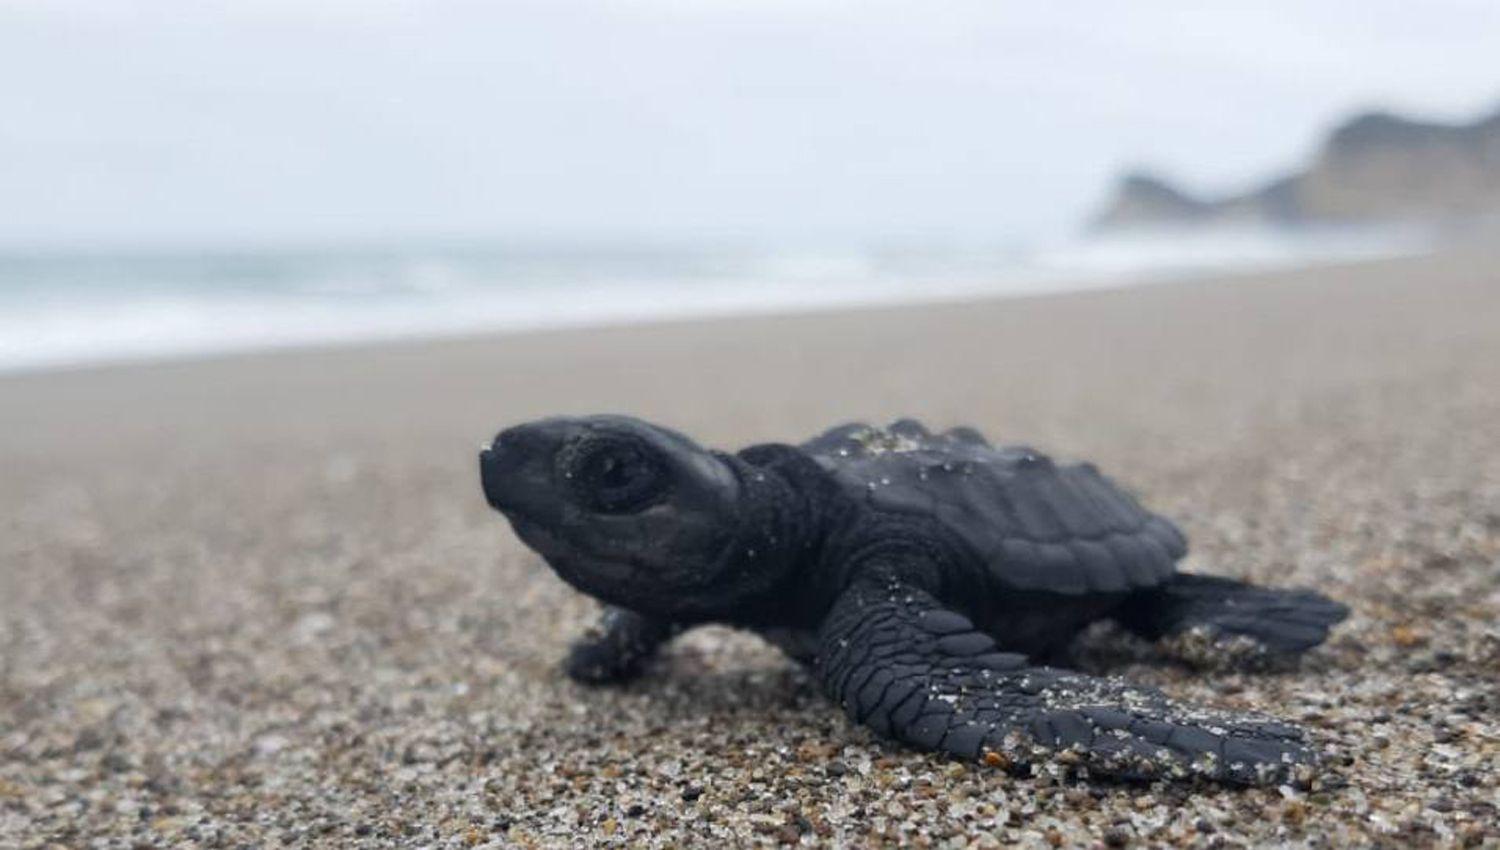 Nacen 38 ejemplares de la tortuga marina Lauacuted la maacutes grande del planeta